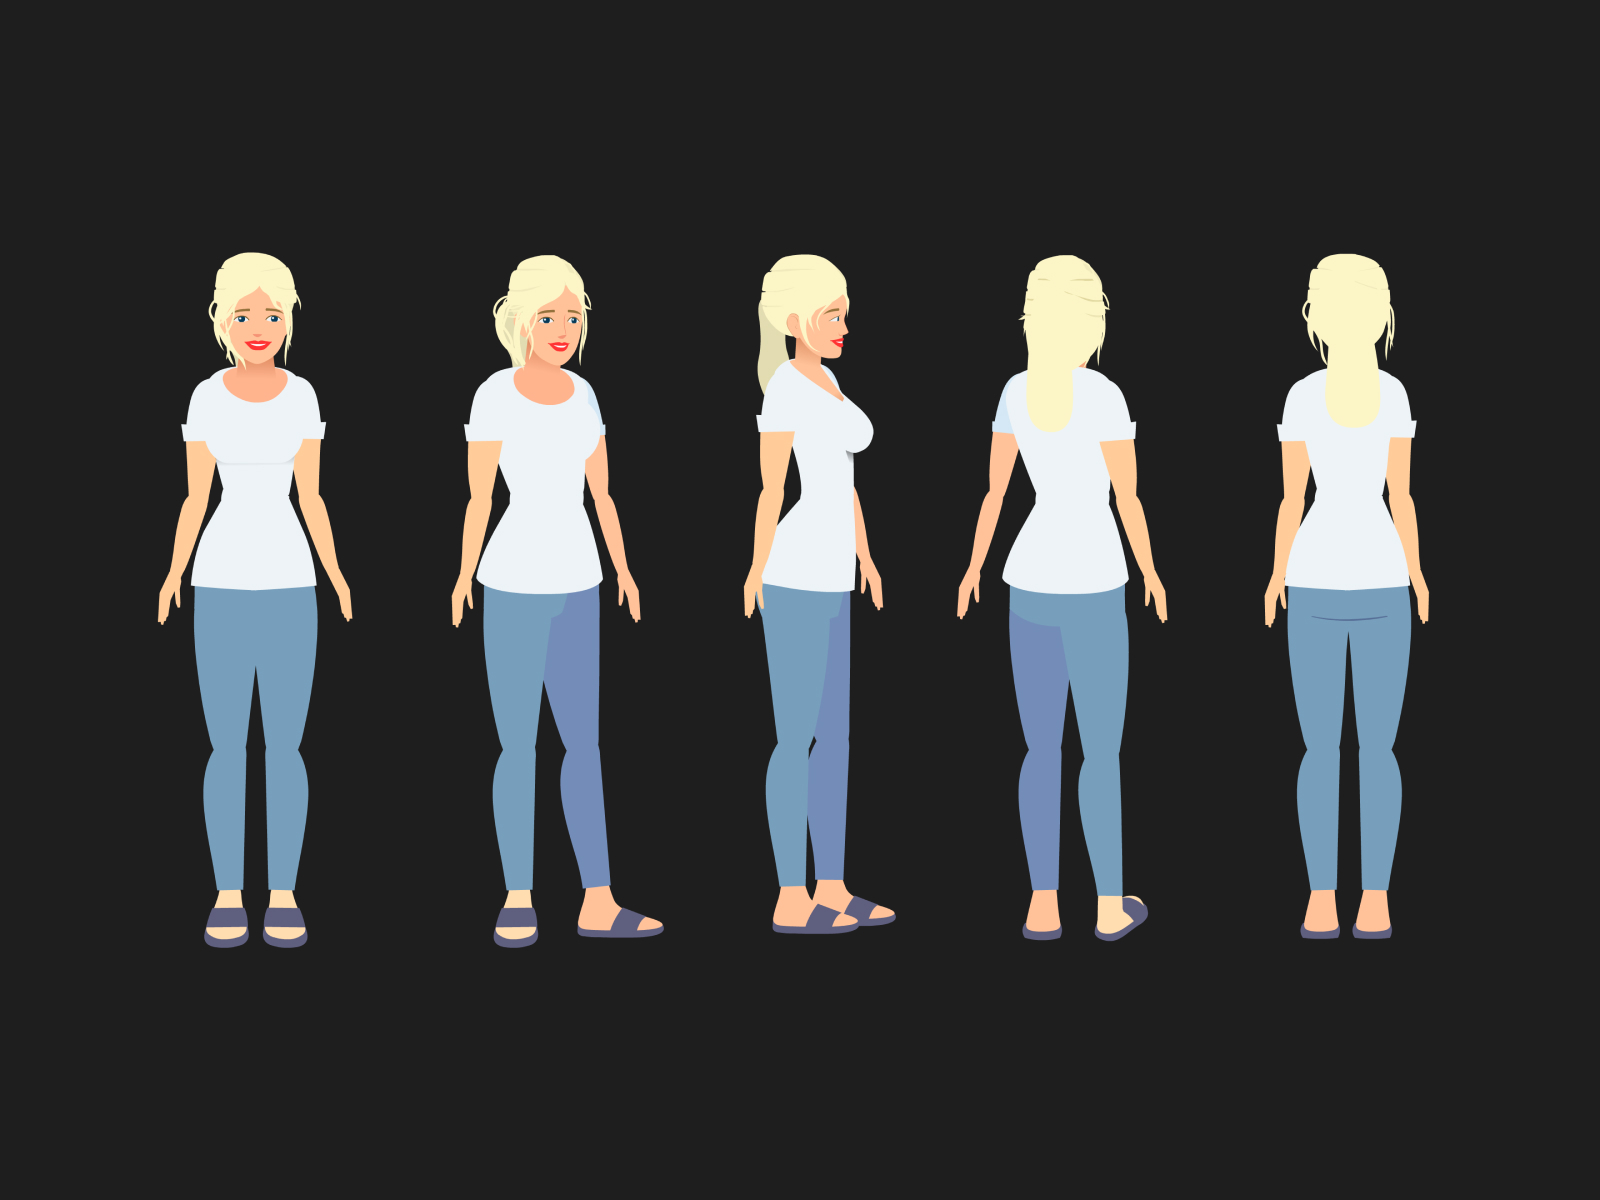 Stylized Female Character Design Tutorial By Joshuaprakash On Dribbble 